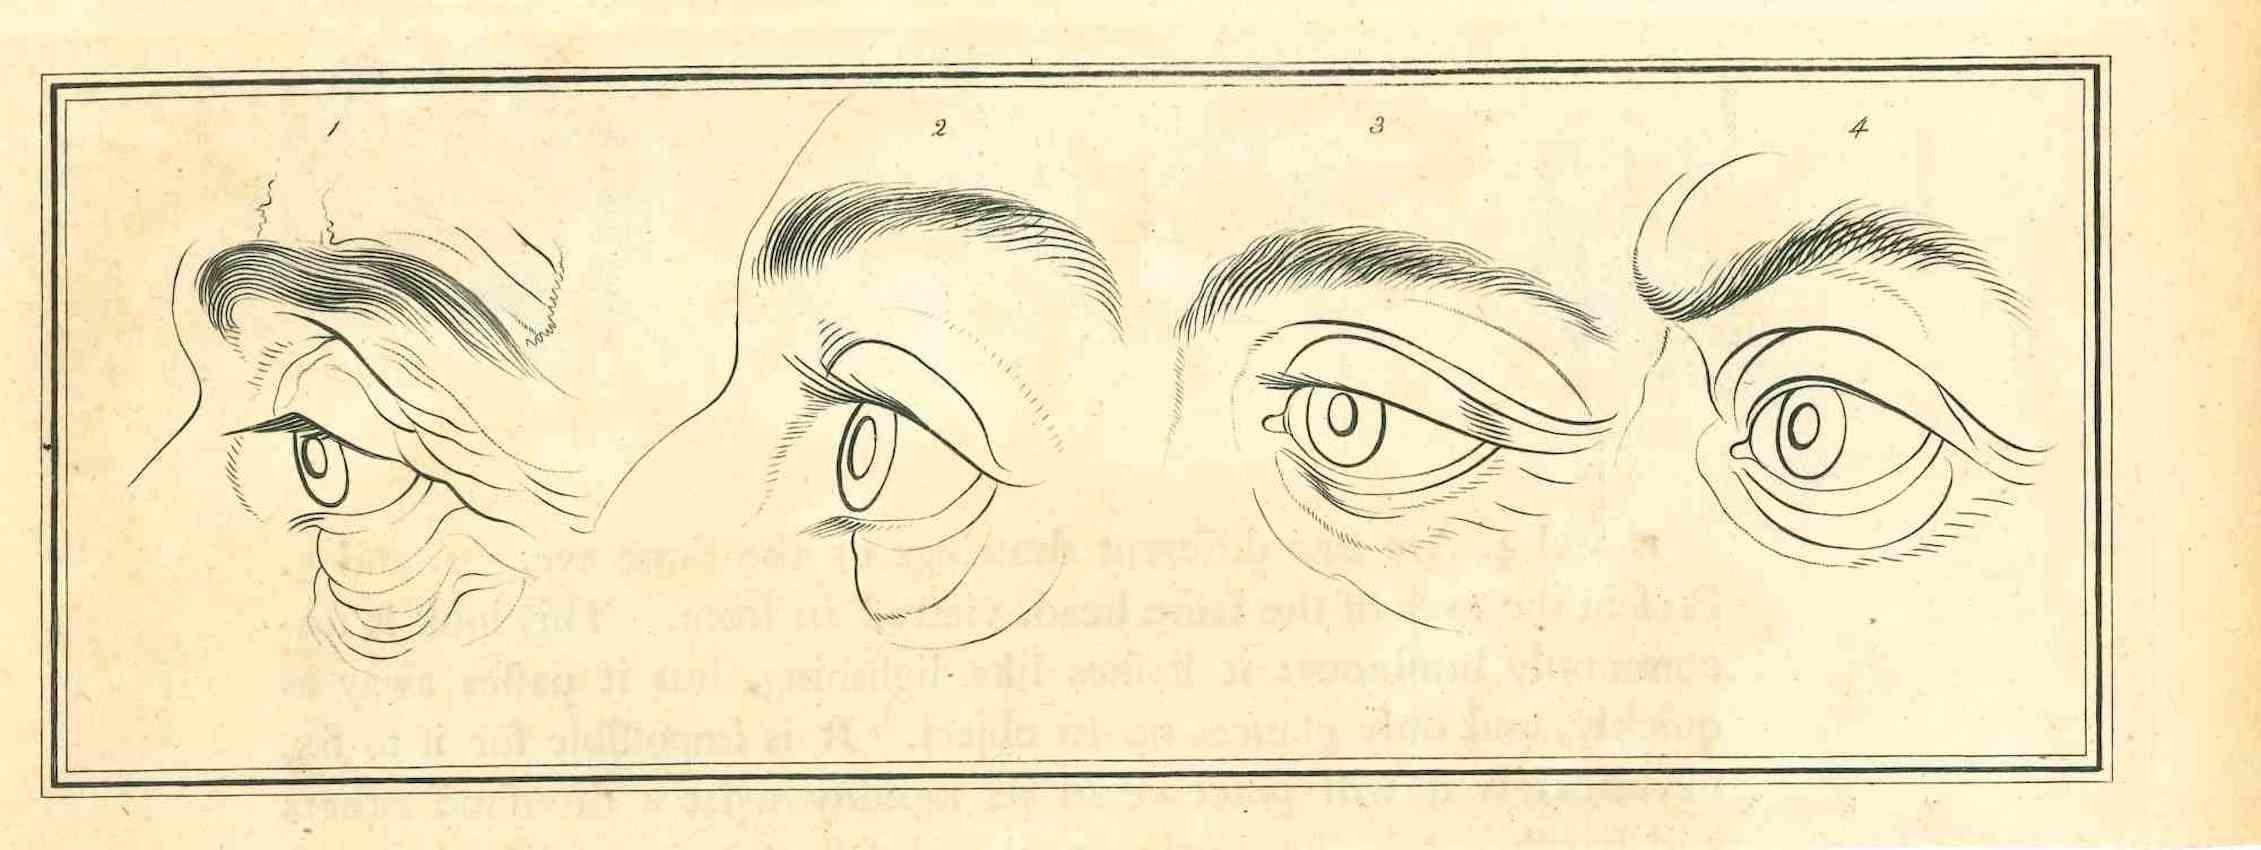 Les yeux - La physionomie est une gravure originale réalisée par Thomas Holloway pour les "Essais sur la physionomie, destinés à promouvoir la connaissance et l'amour de l'humanité" de Johann Caspar Lavater, Londres, Bensley, 1810. 

Bonnes